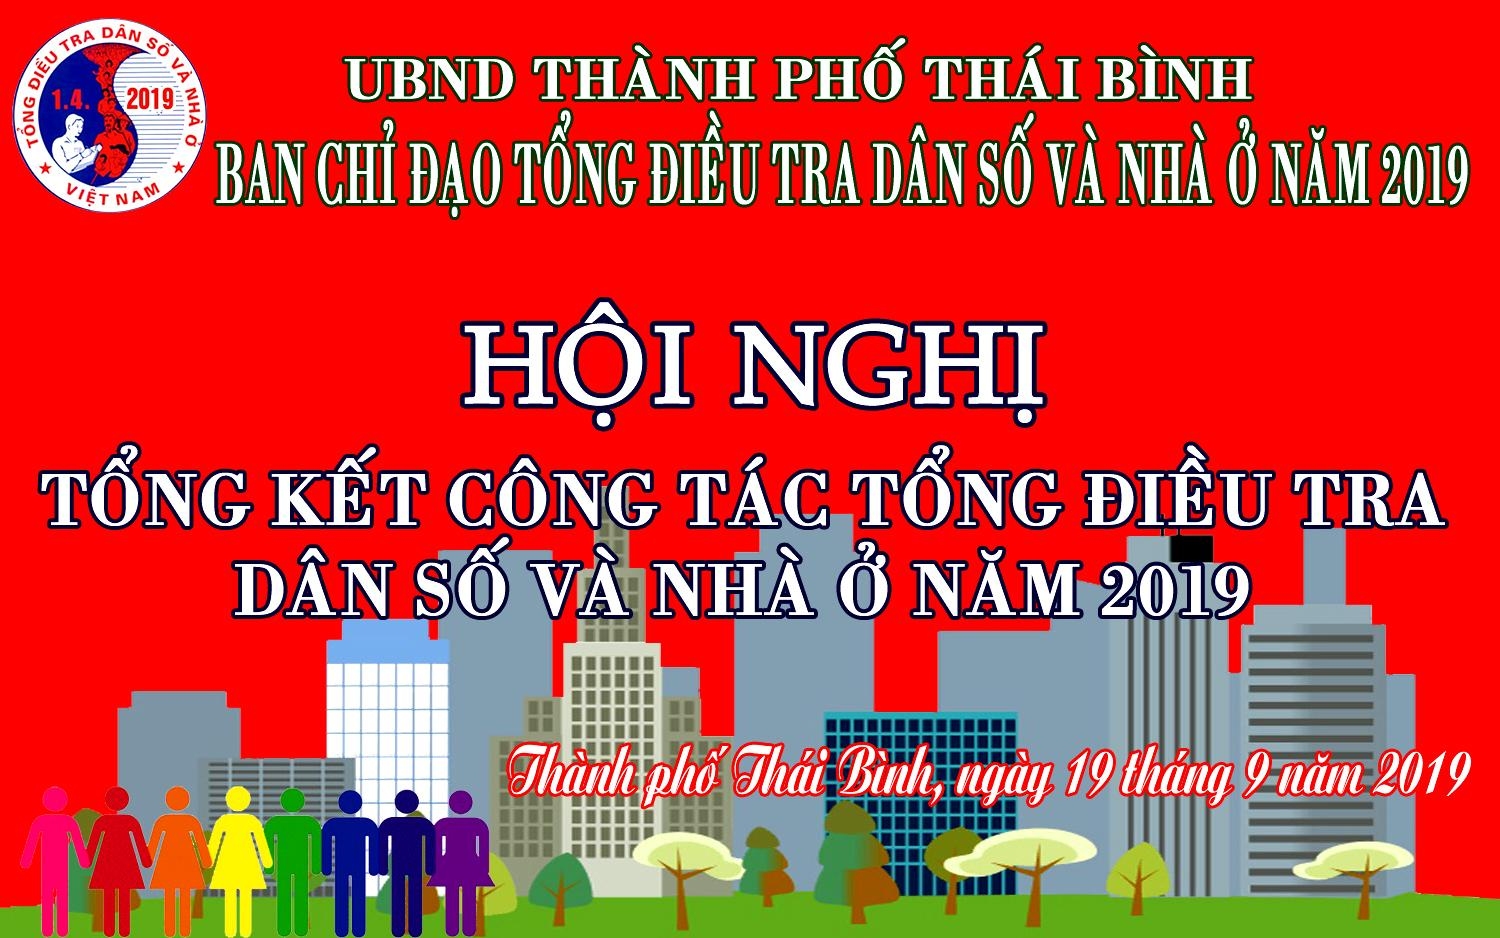 Thành phố Thái Bình tổng kết  công tác Tổng điều tra dân số và nhà ở năm 2019